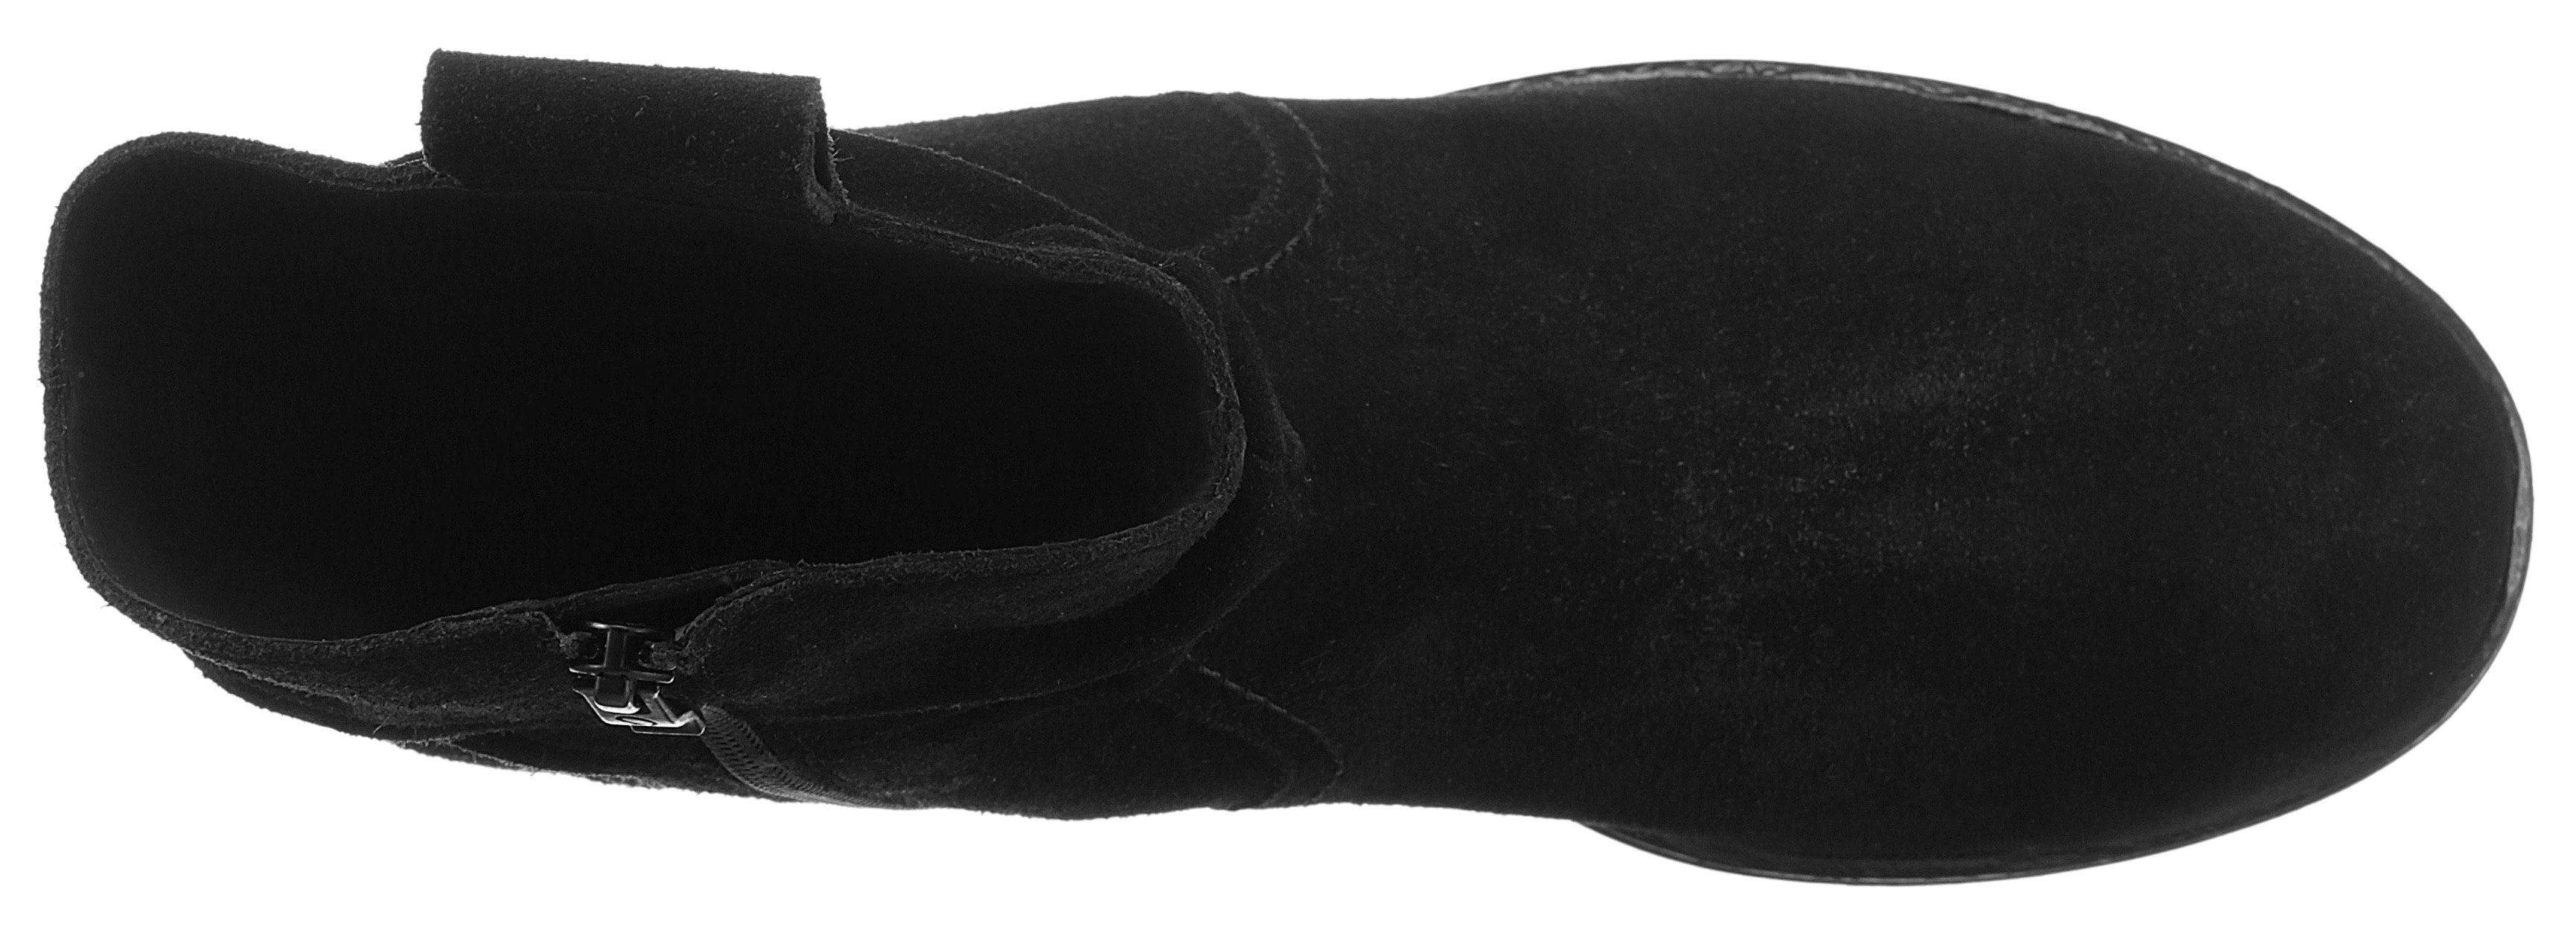 Ara LIVERPOOL Stiefelette mit slouchy-Schaft, schwarz Weite G